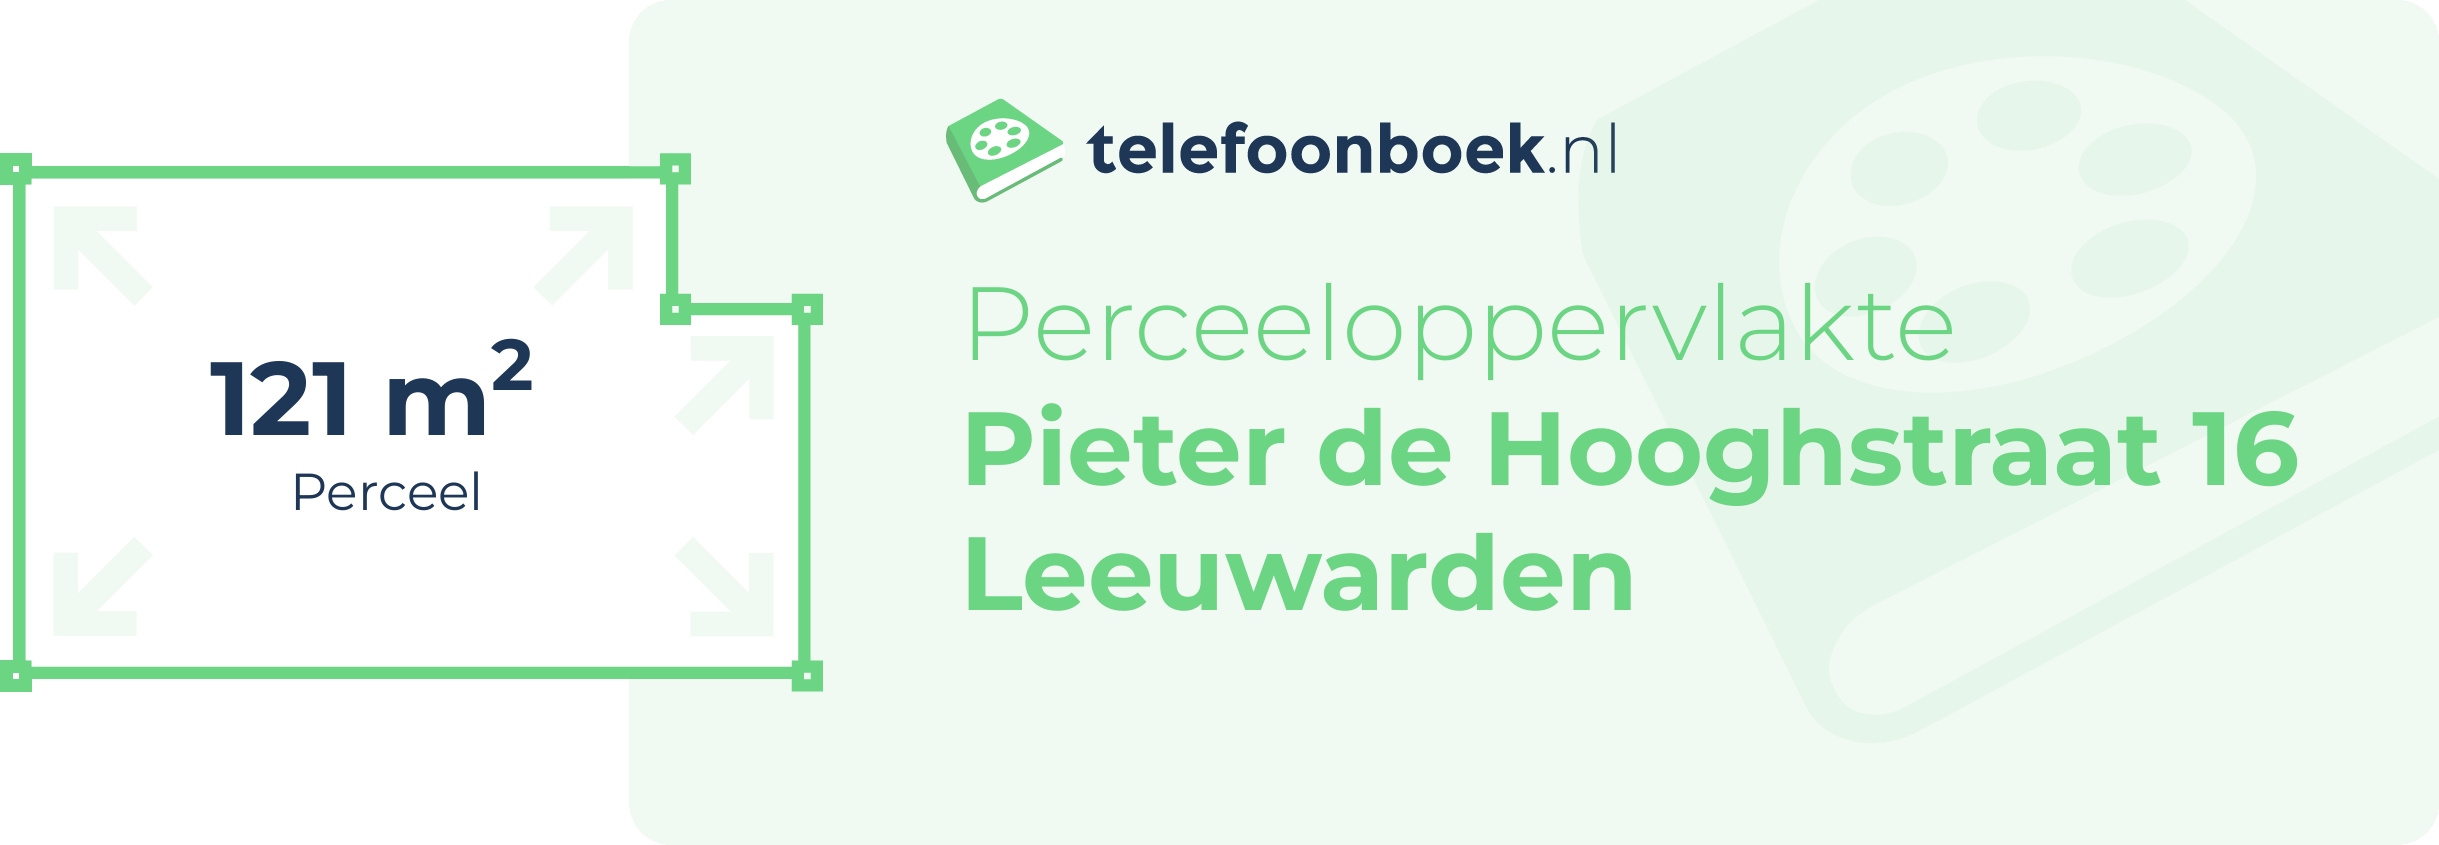 Perceeloppervlakte Pieter De Hooghstraat 16 Leeuwarden